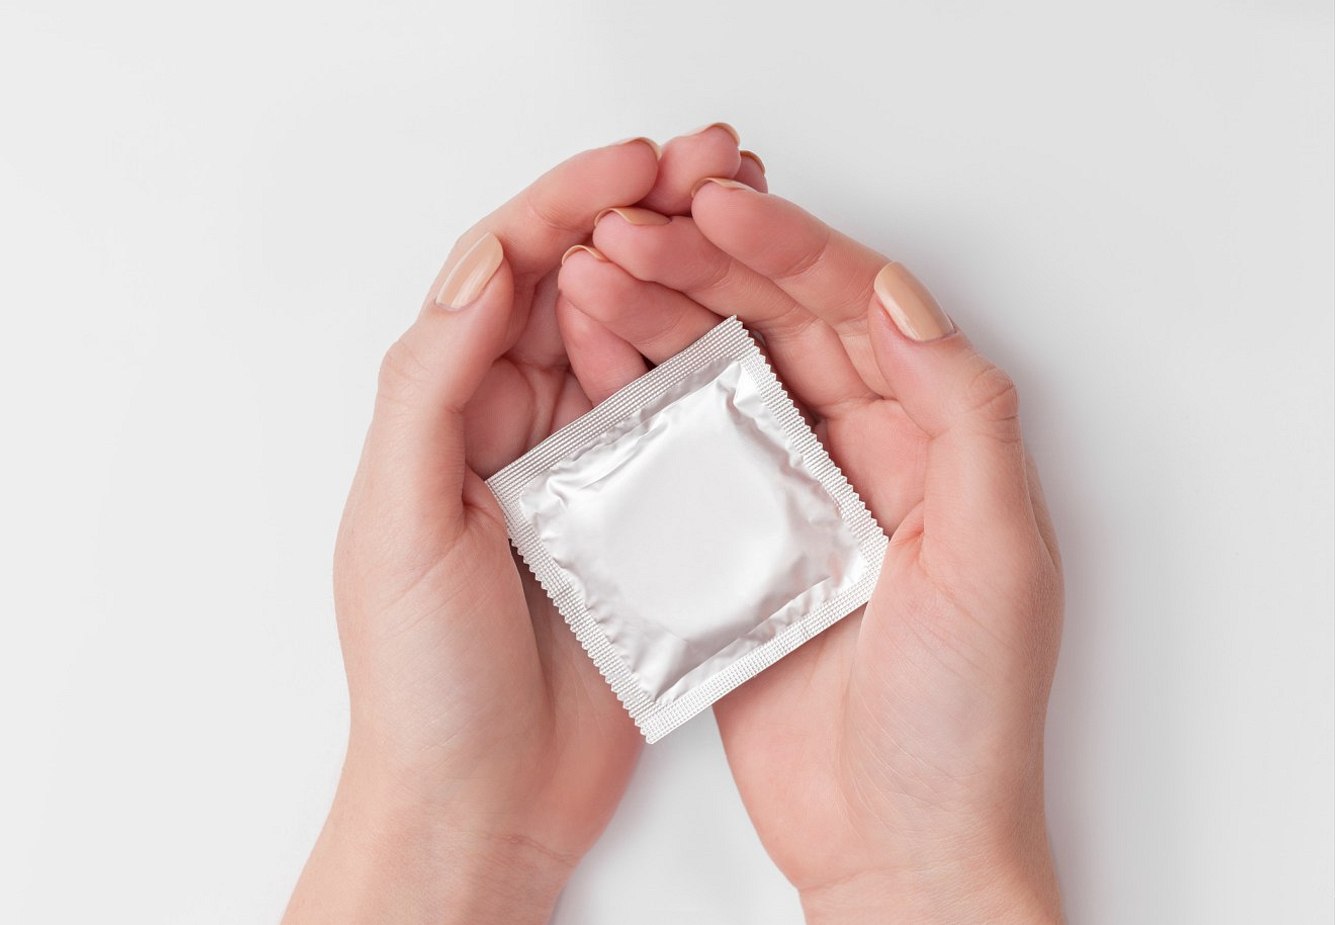 Durex-Studie: Fast die Hälfte der Deutschen benutzt kein Kondom bei neuem Sex-Partner